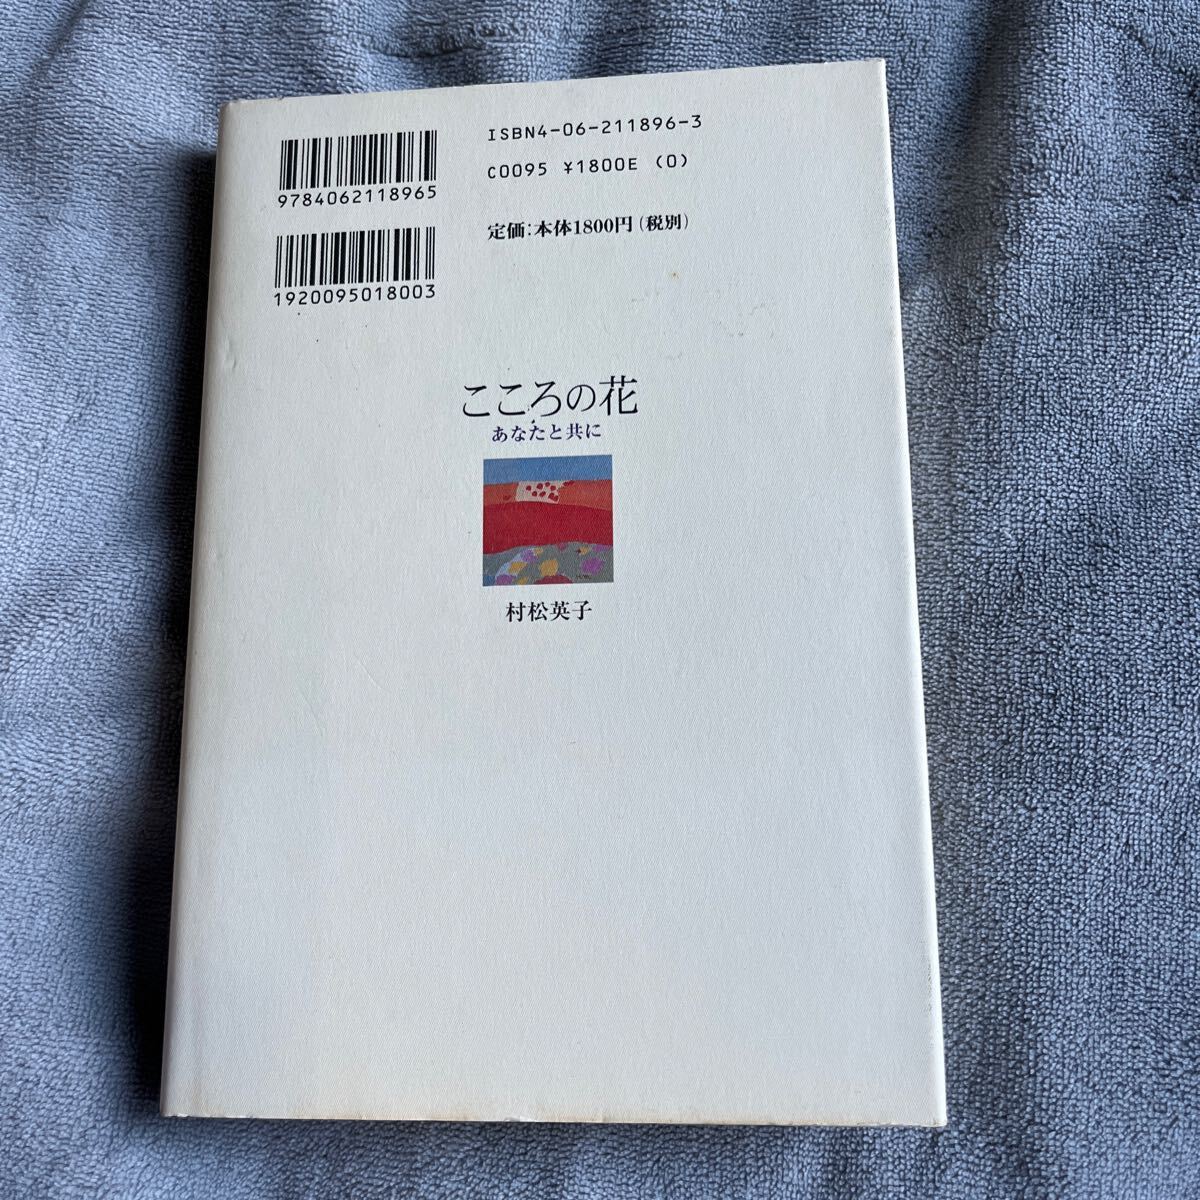 [ подпись книга@/ первая версия ]. сосна Британия .[ здесь .. цветок вы наряду с ].. фирма автограф книга@ Mishima Yukio 